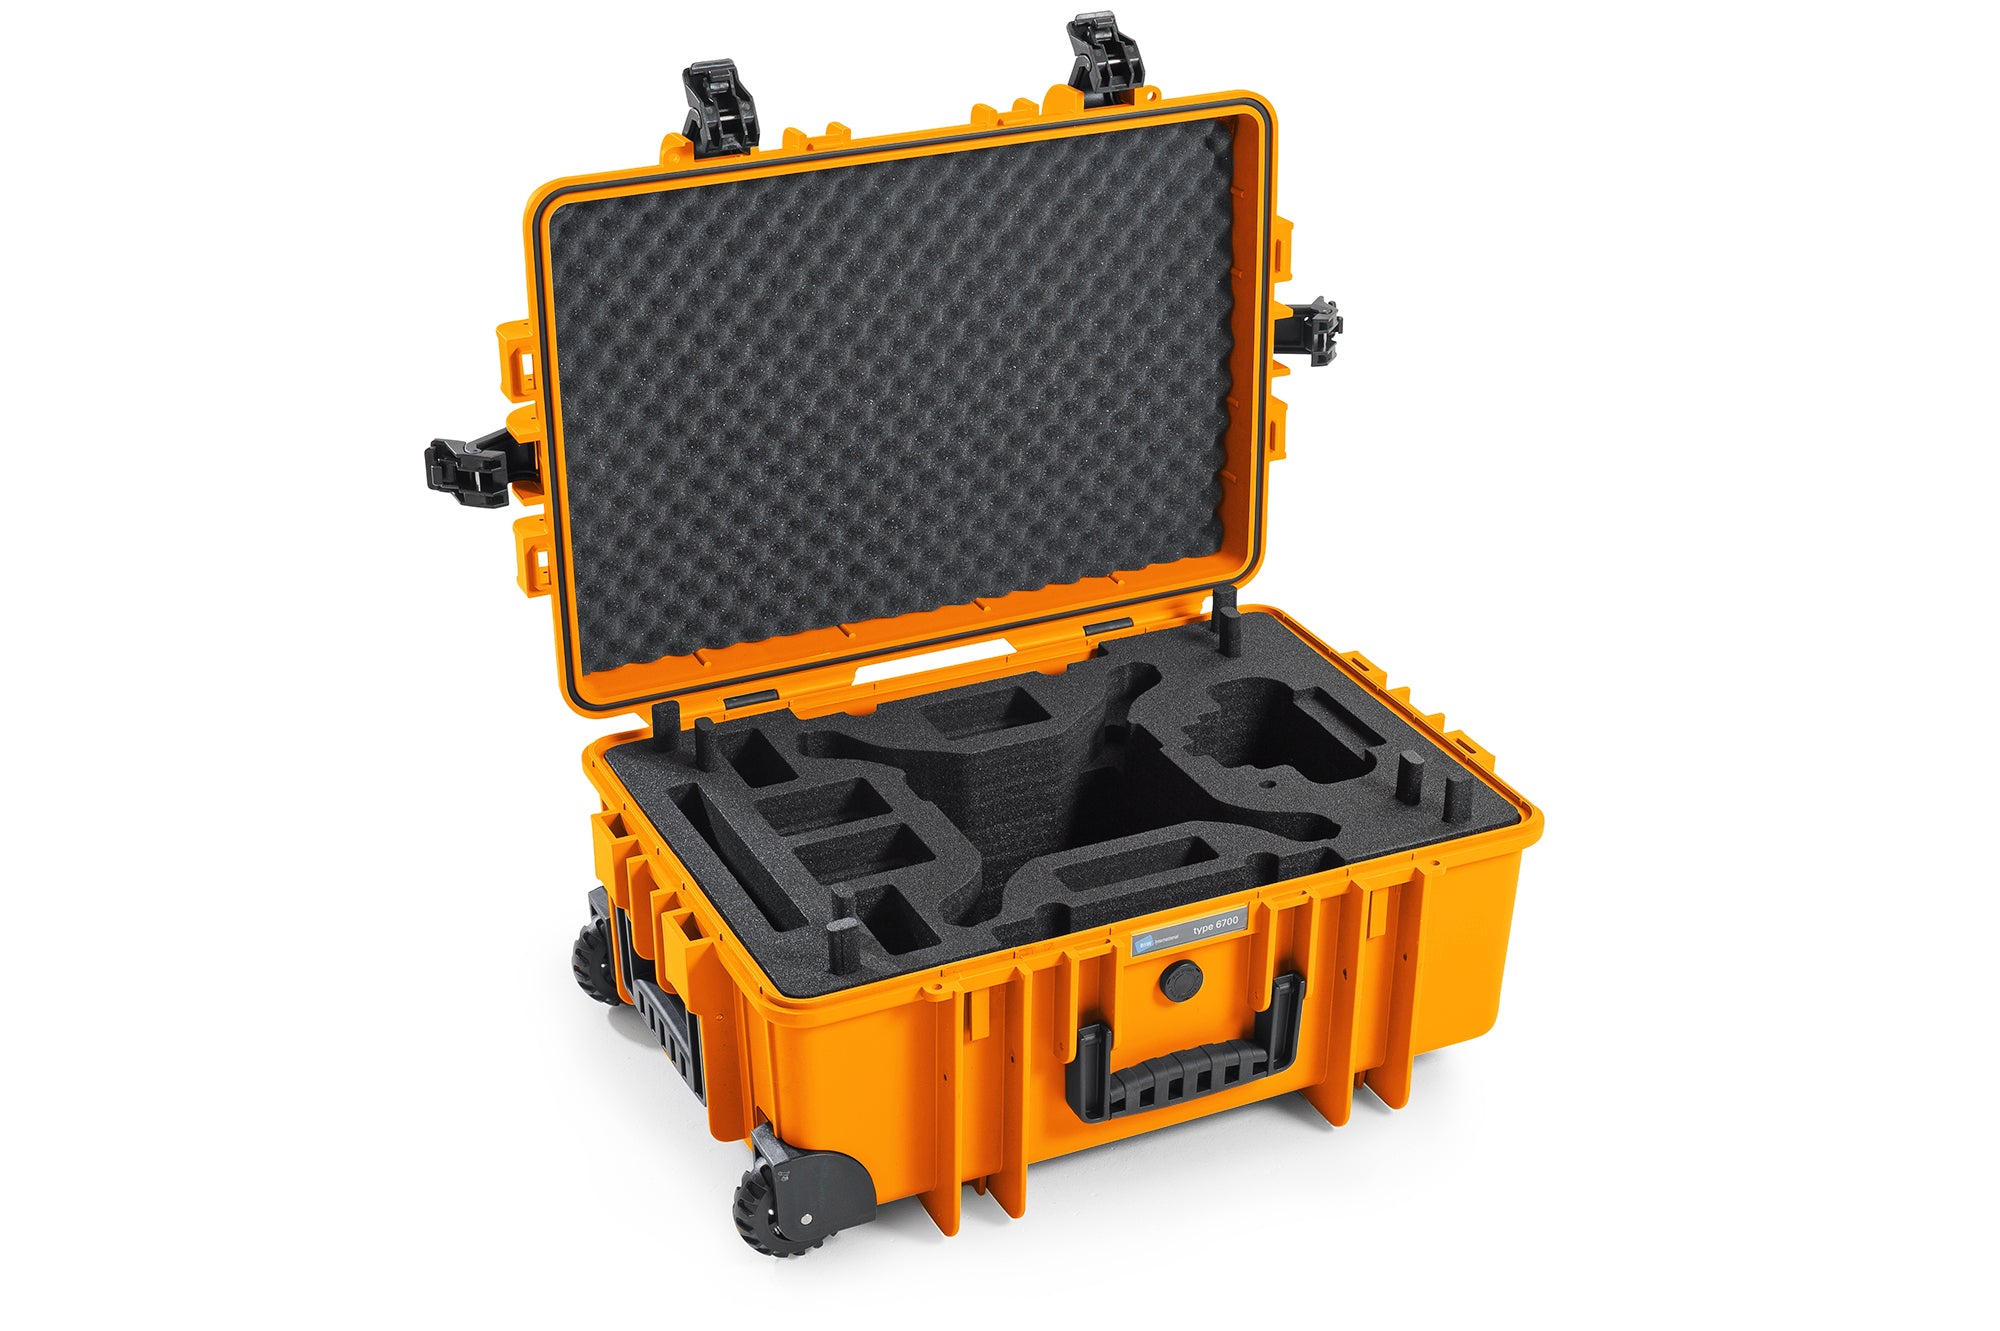 B&W International Type 6700 Hard Drone Case For The DJI Pro 4 + Advanced Obsidian